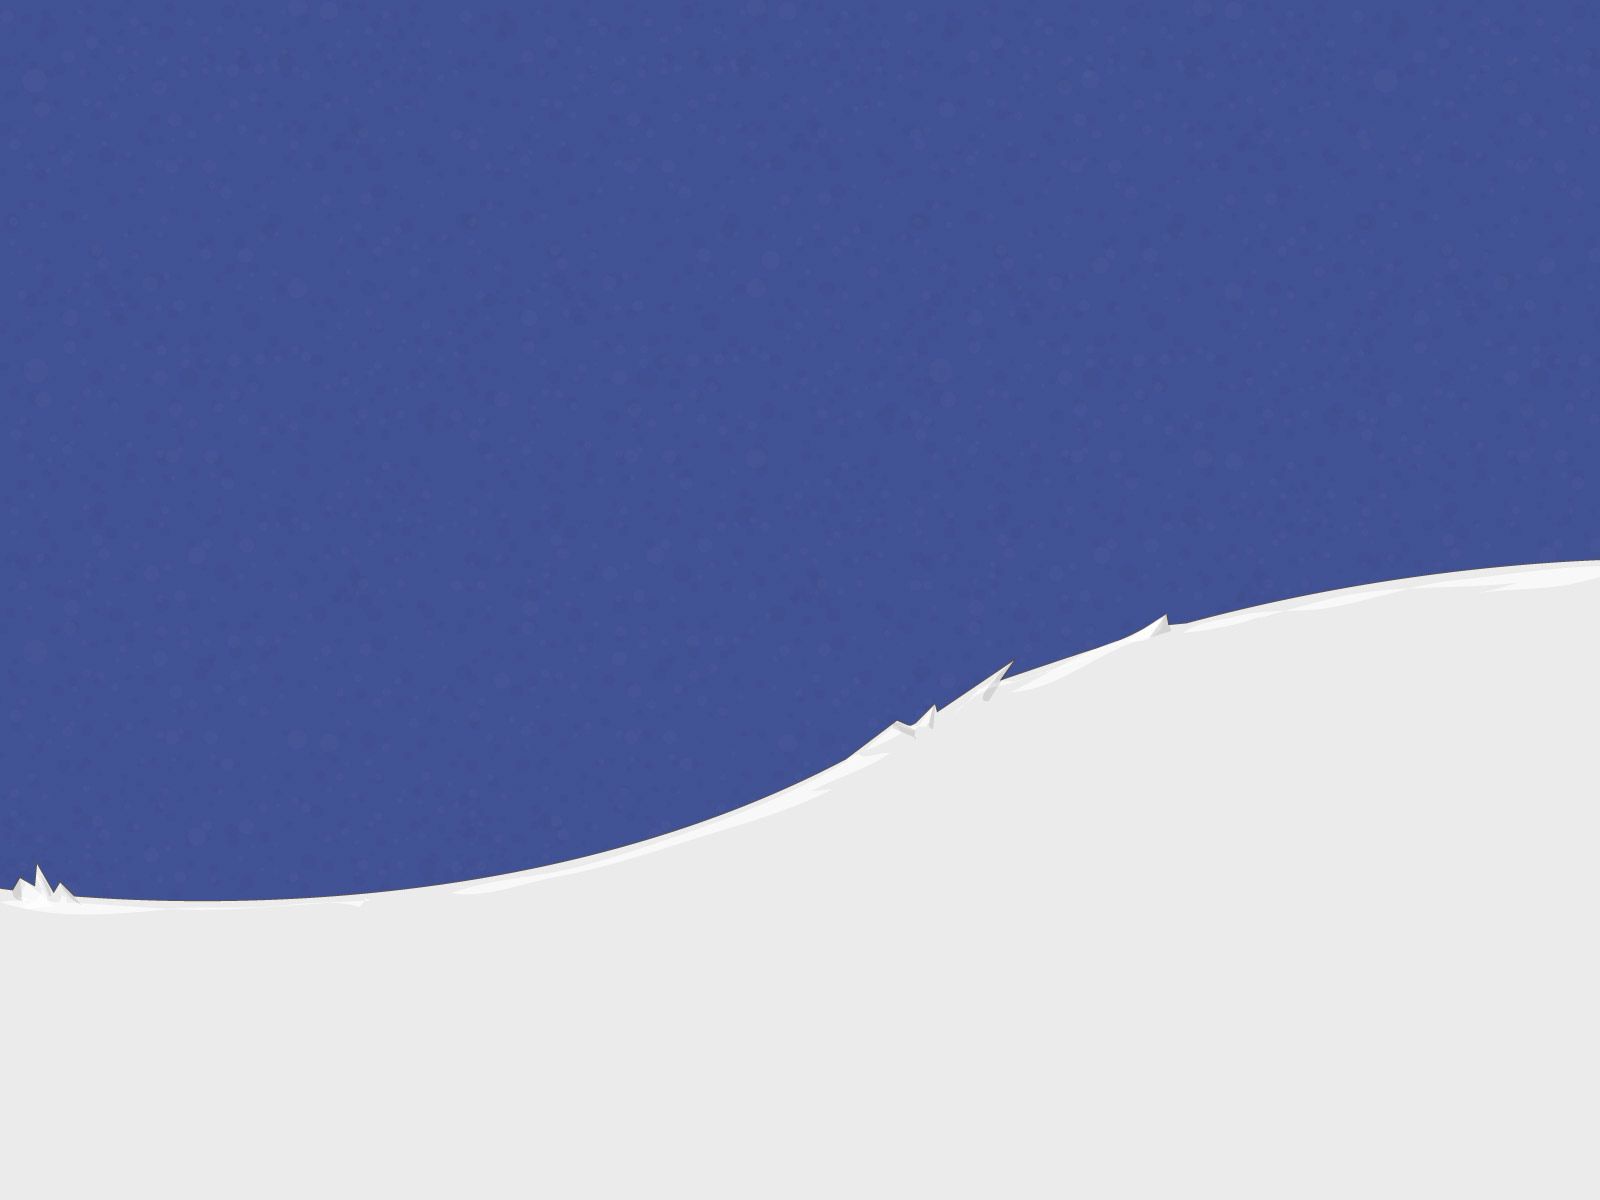 Скачать обои бесплатно Возвышенность, Гора, Снег, Минимализм картинка на рабочий стол ПК